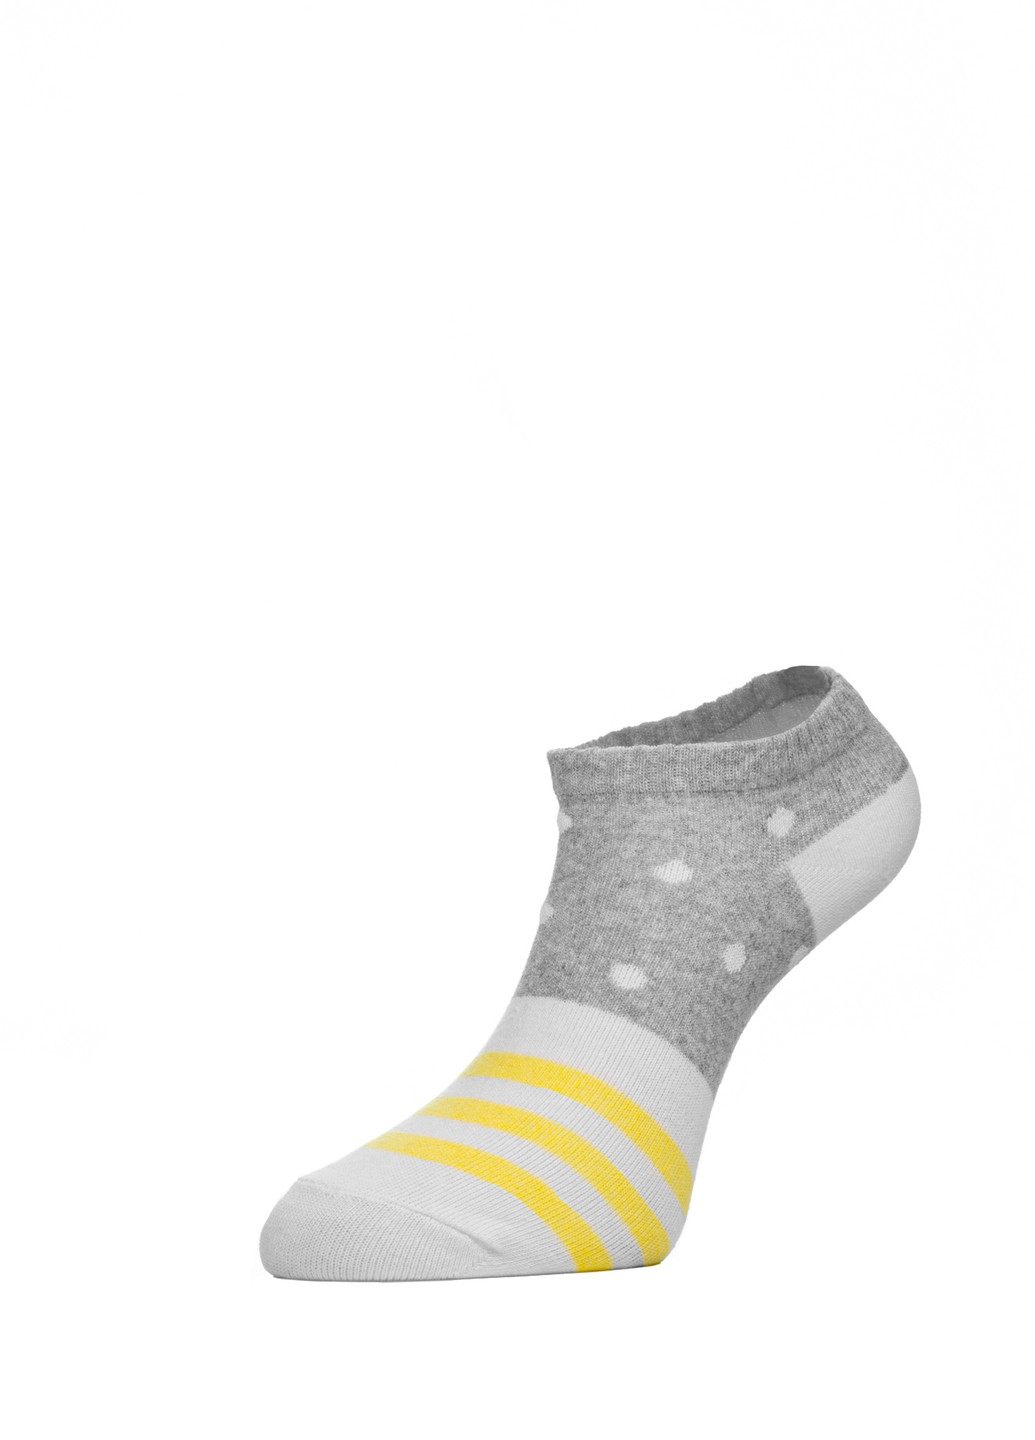 Шкарпетки жін. арт., р.25, 408 сірий-білий-чорний CHOBOT 50s-68 (225542663)